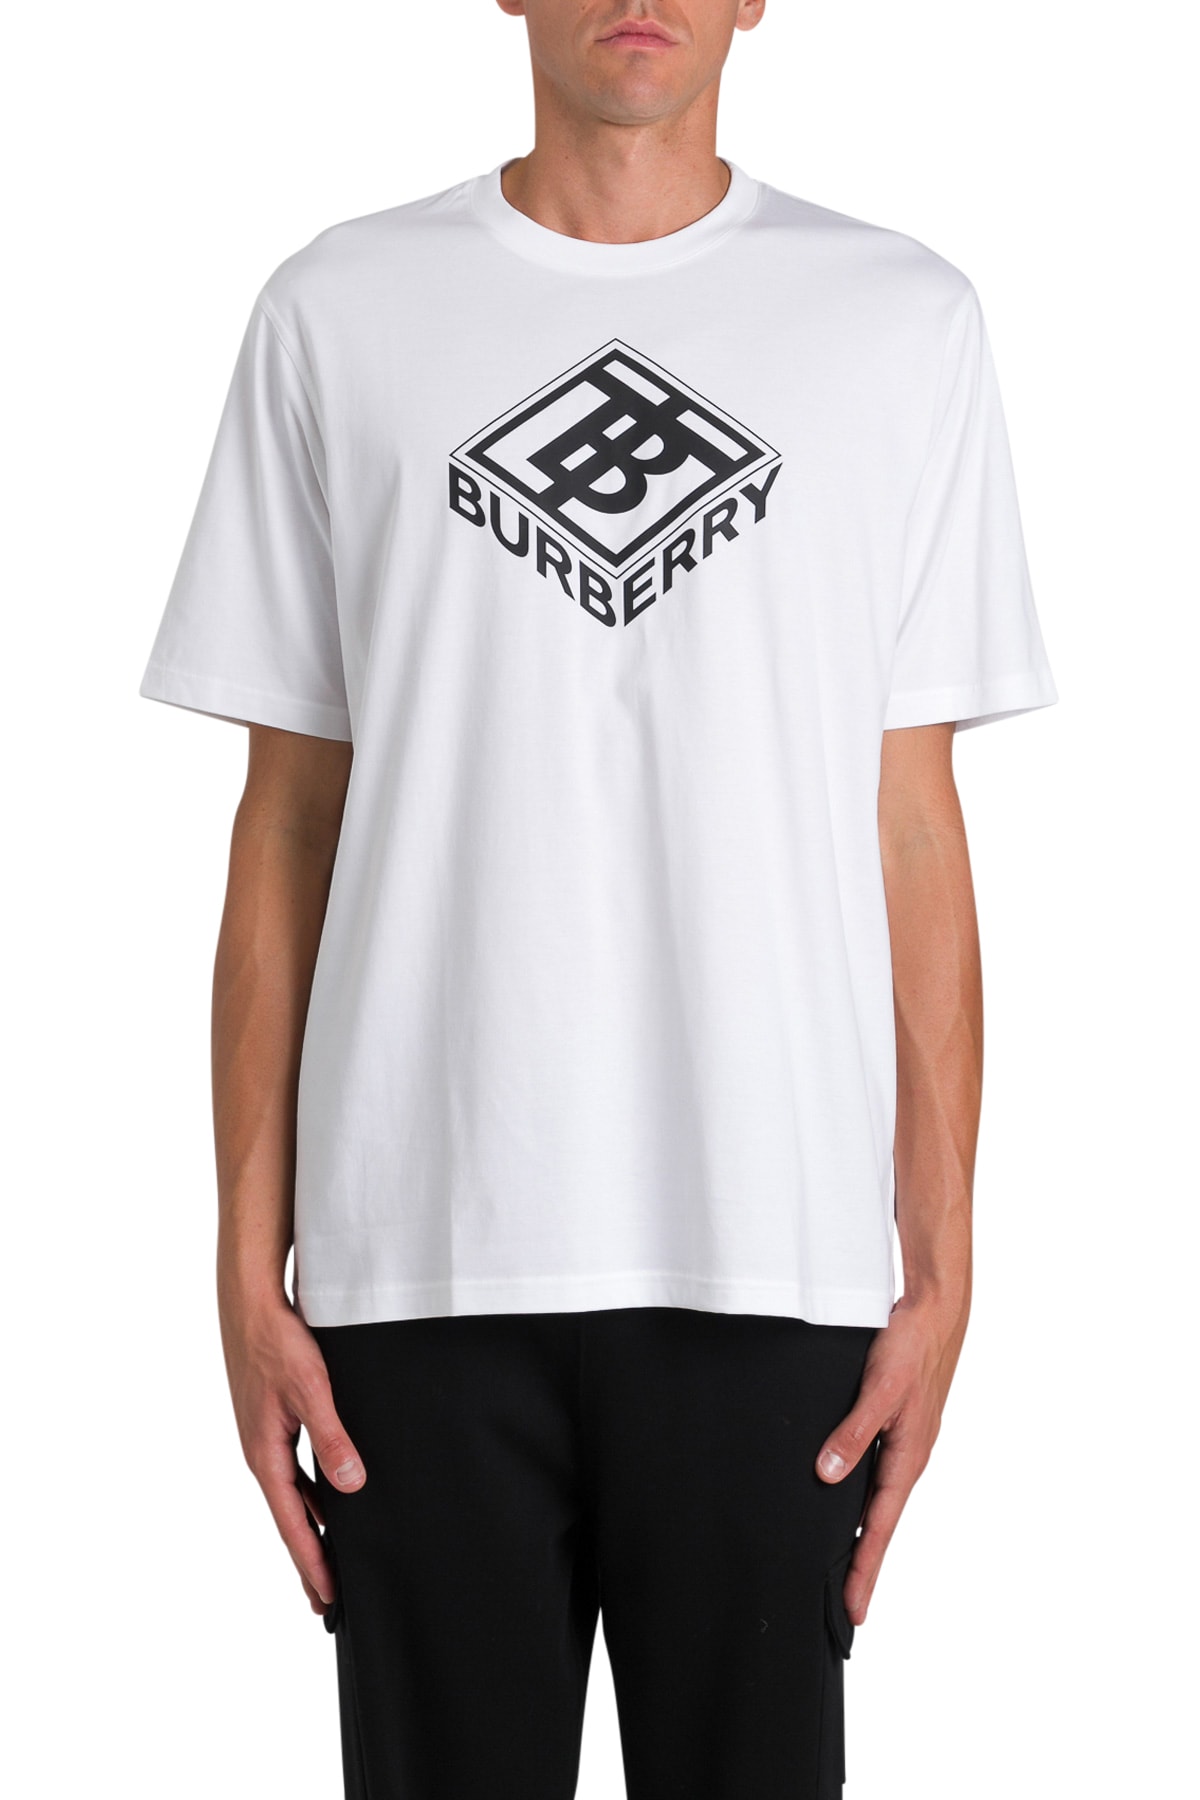 tb burberry t shirt